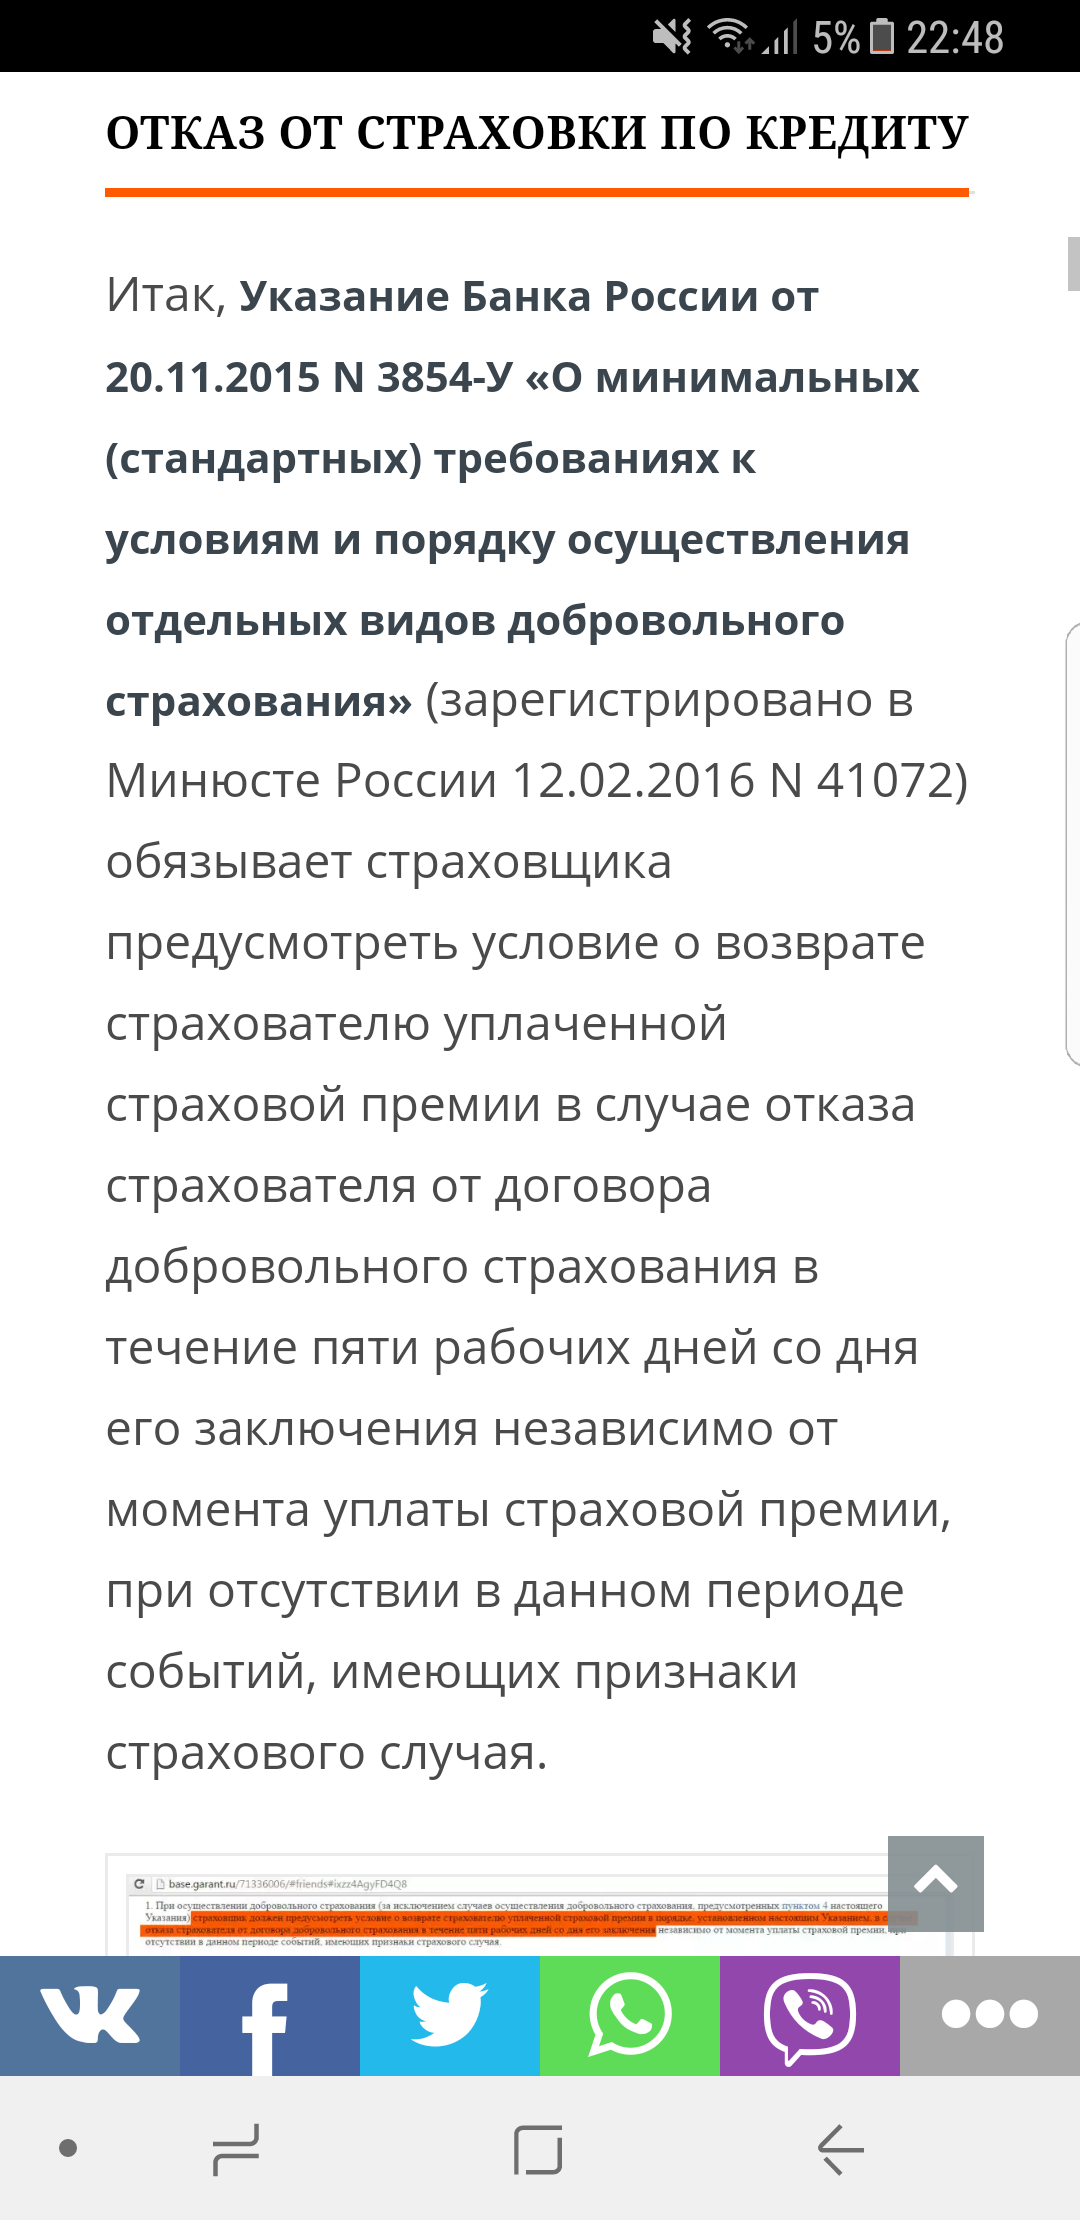 Саяногорск Инфо - screenshot_20170622-224806.png, Скачано: 474